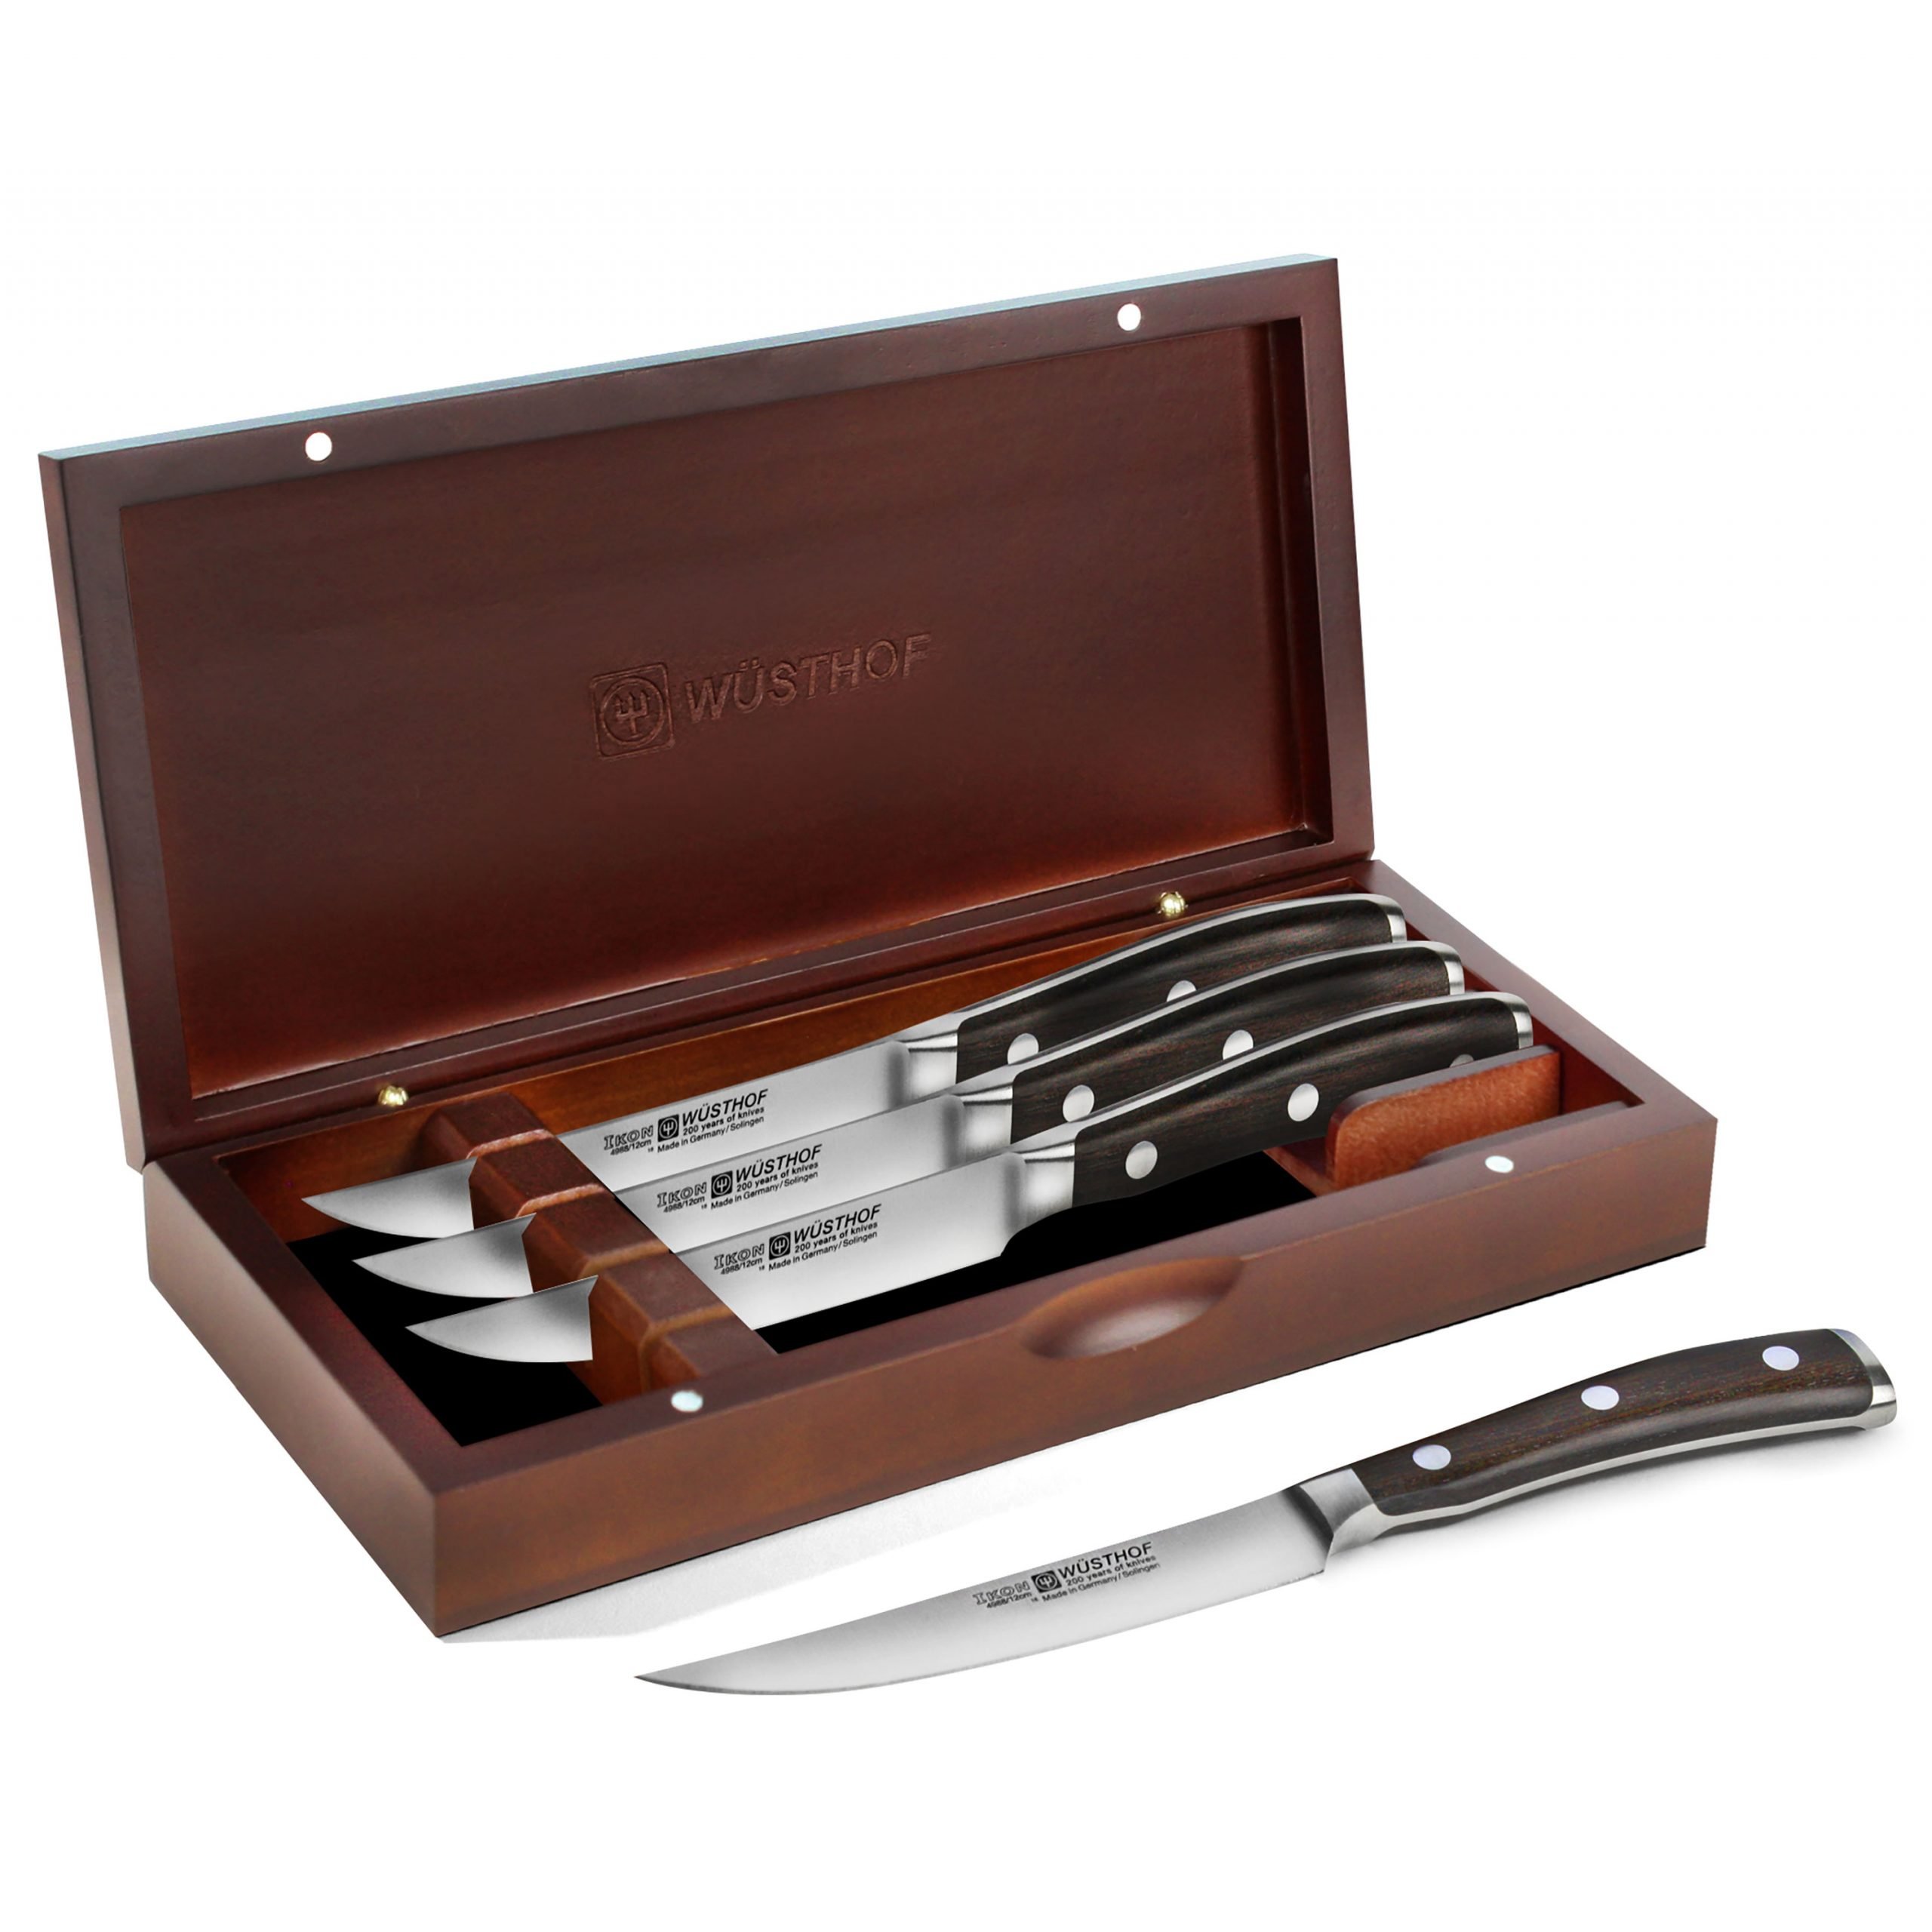 Wusthof Ikon Blackwood Steak Knife Set with Wood Case, 4 Piece ...